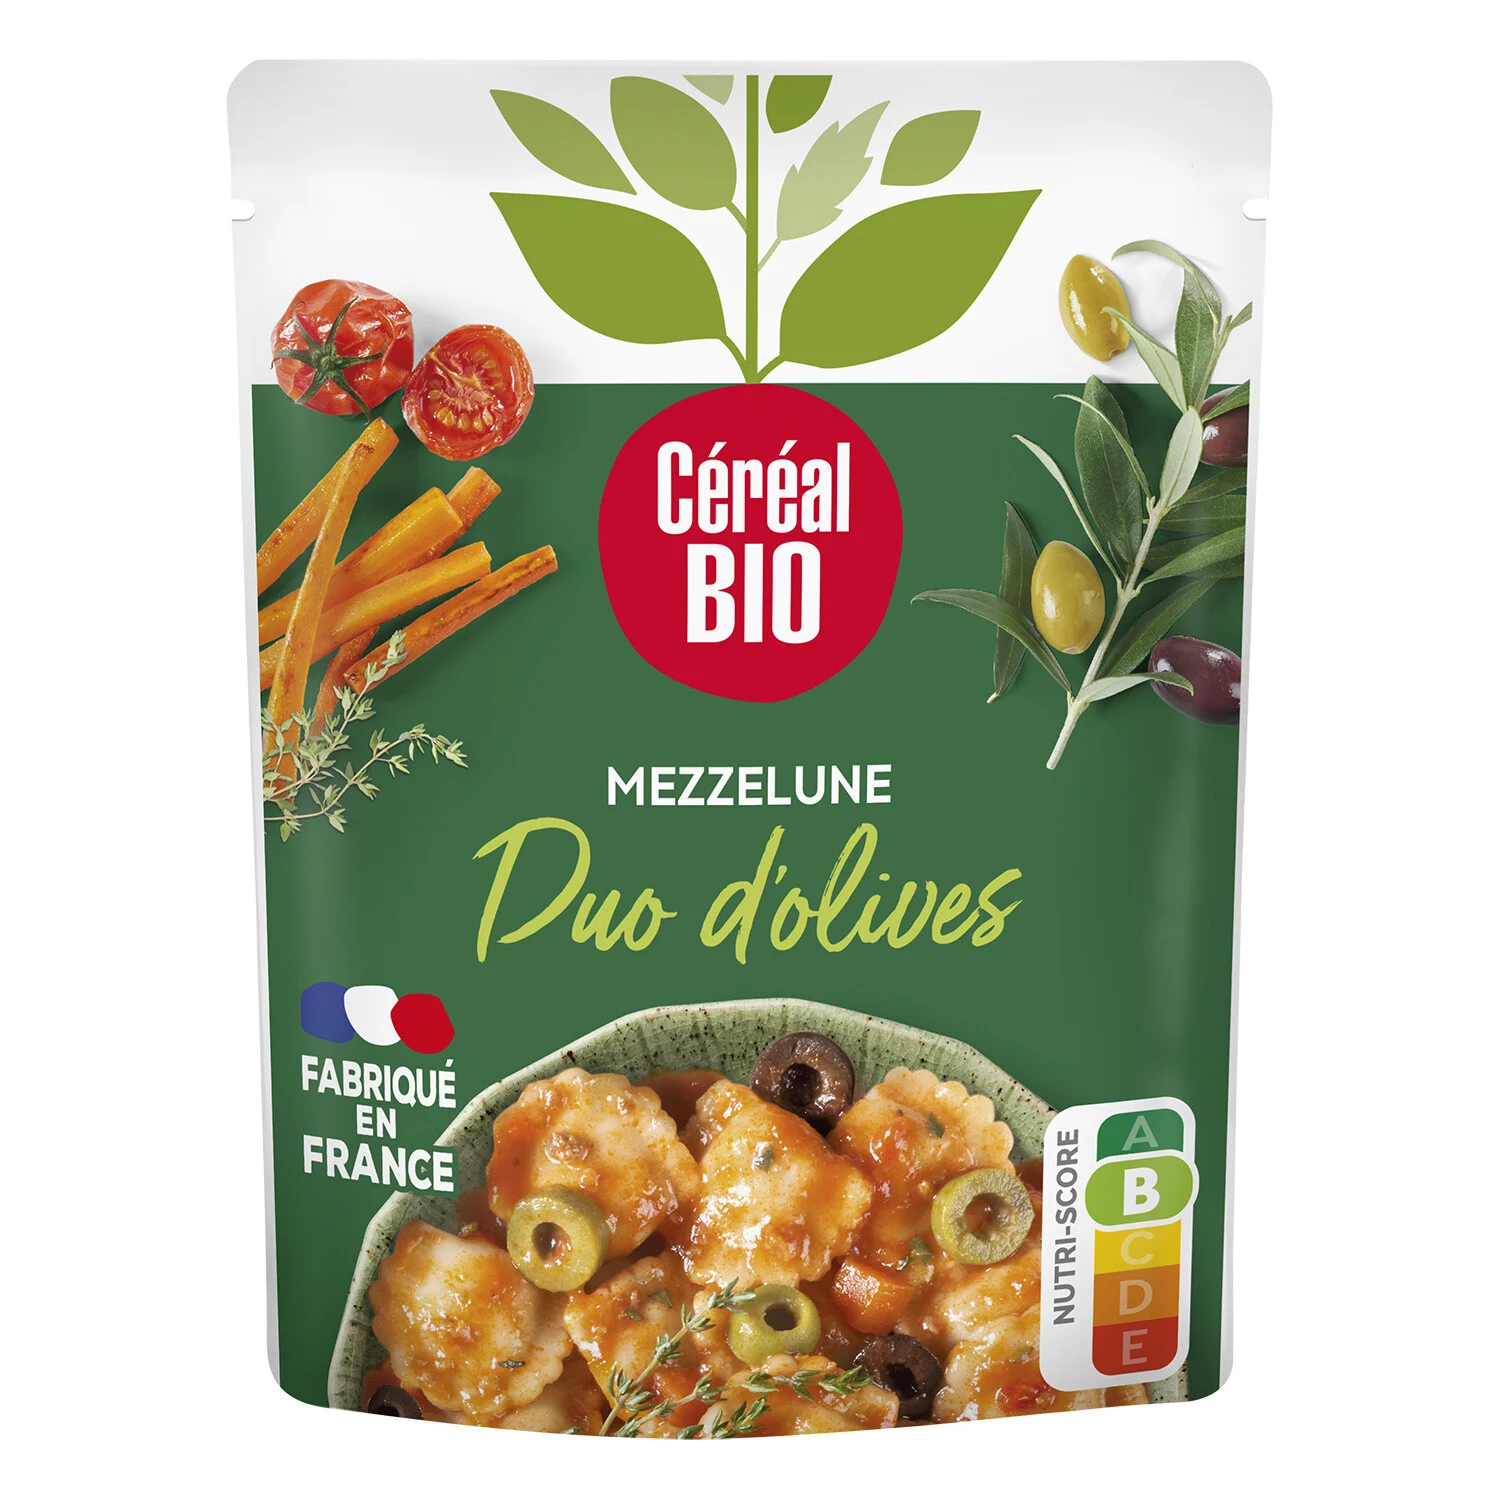 Plat Cuisiné Mezzelune Duo D'olives Bio 280g - Cereal Bio